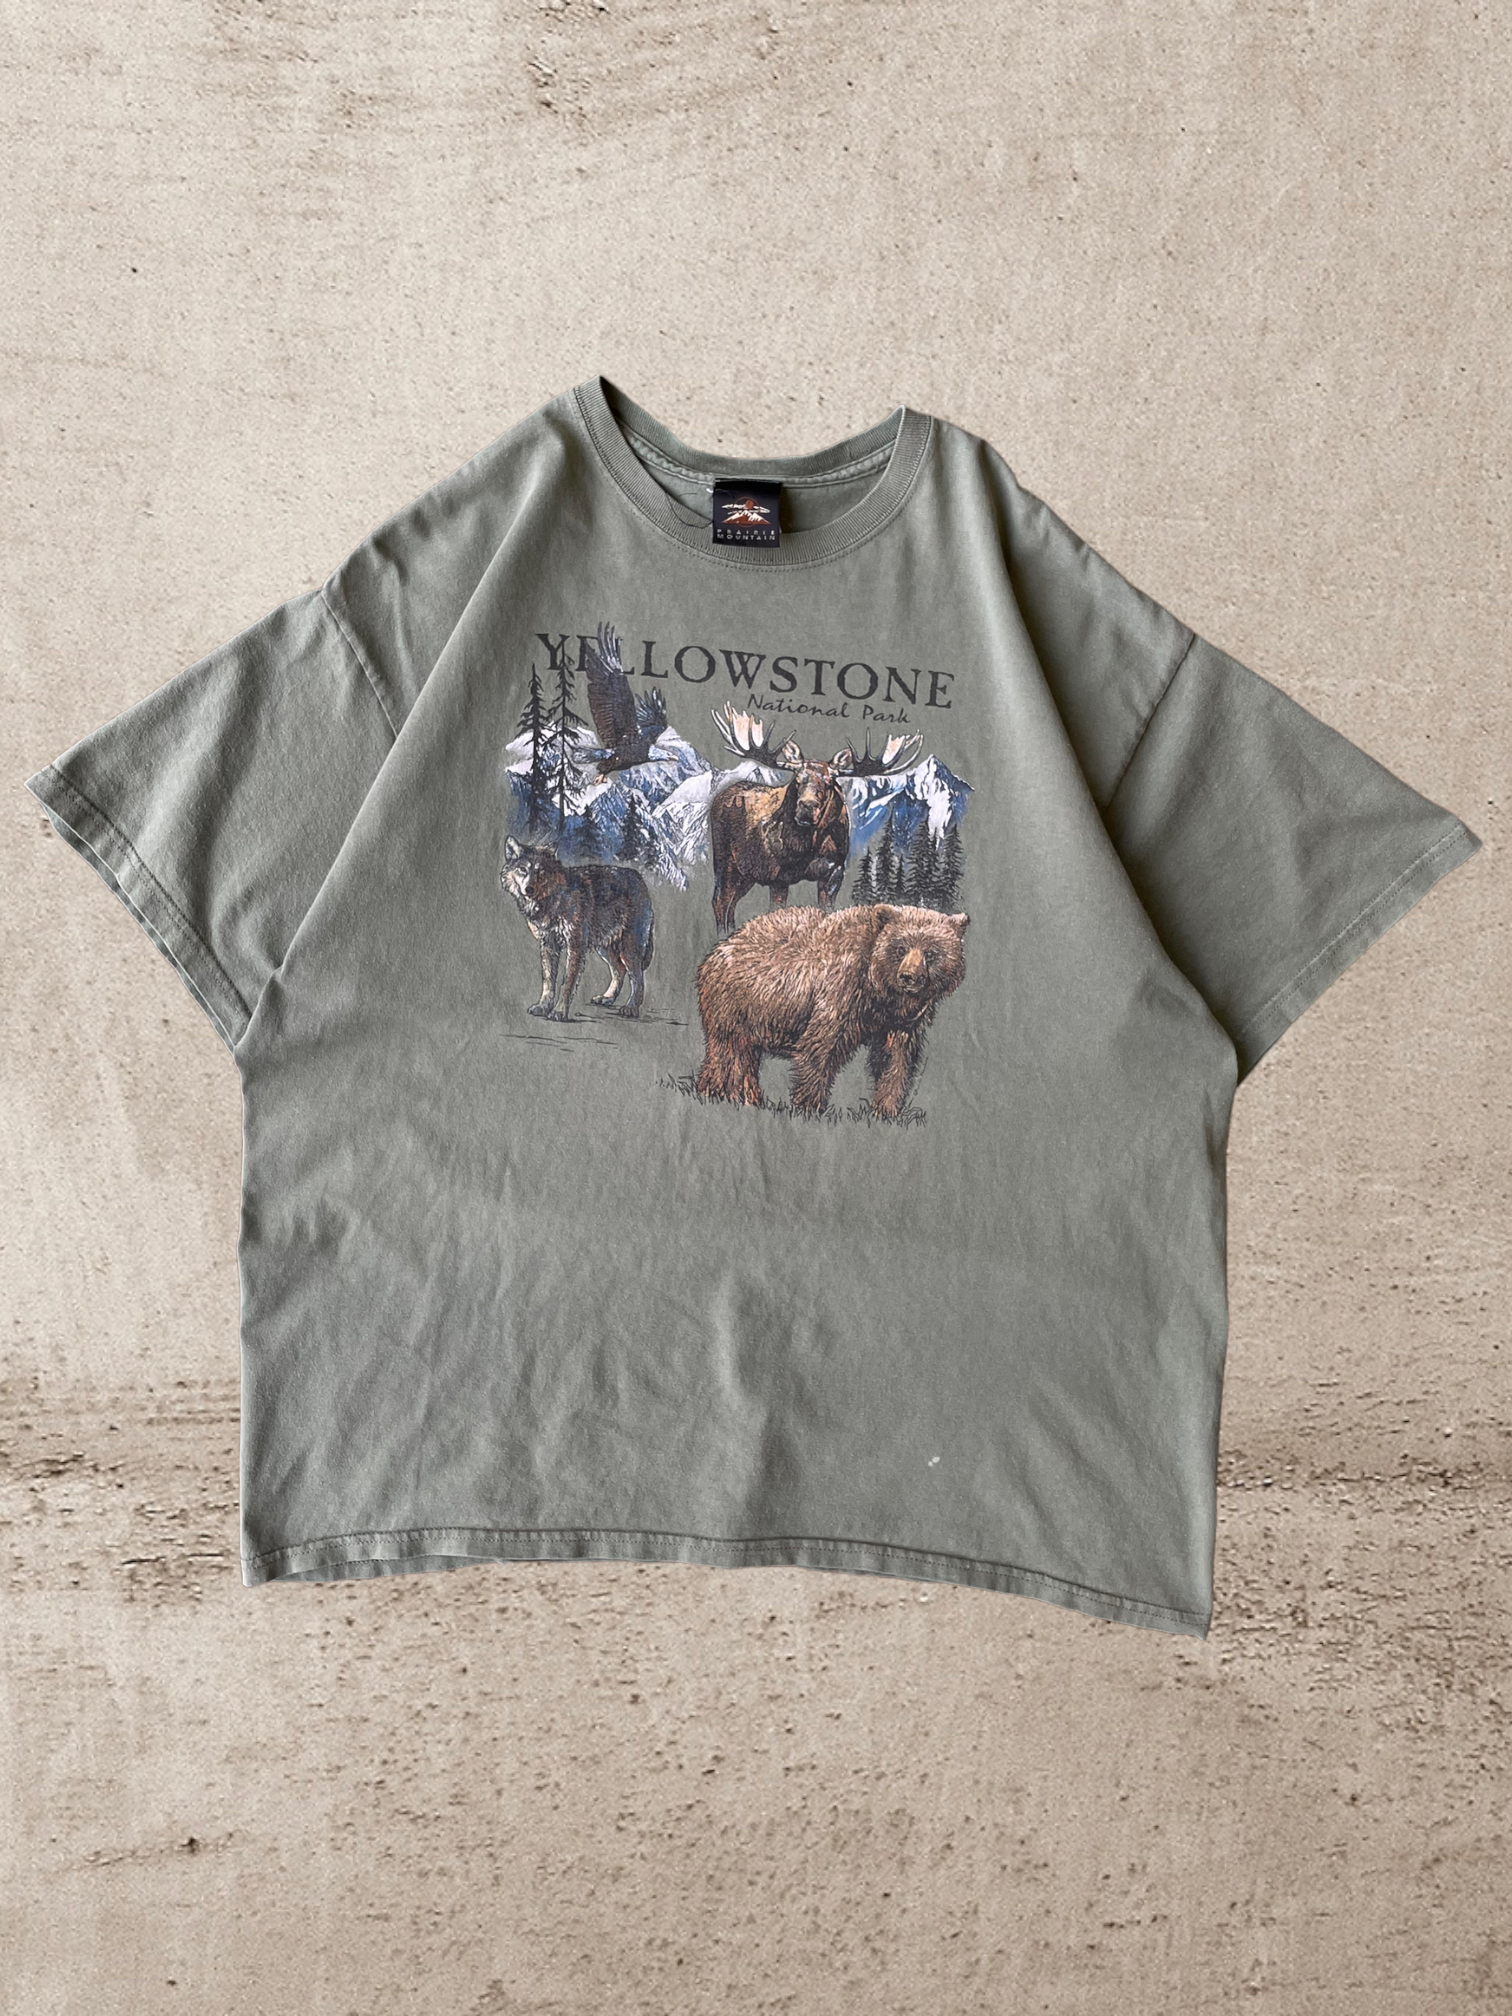 90s Yellowstone Nature T-Shirt - X-Large